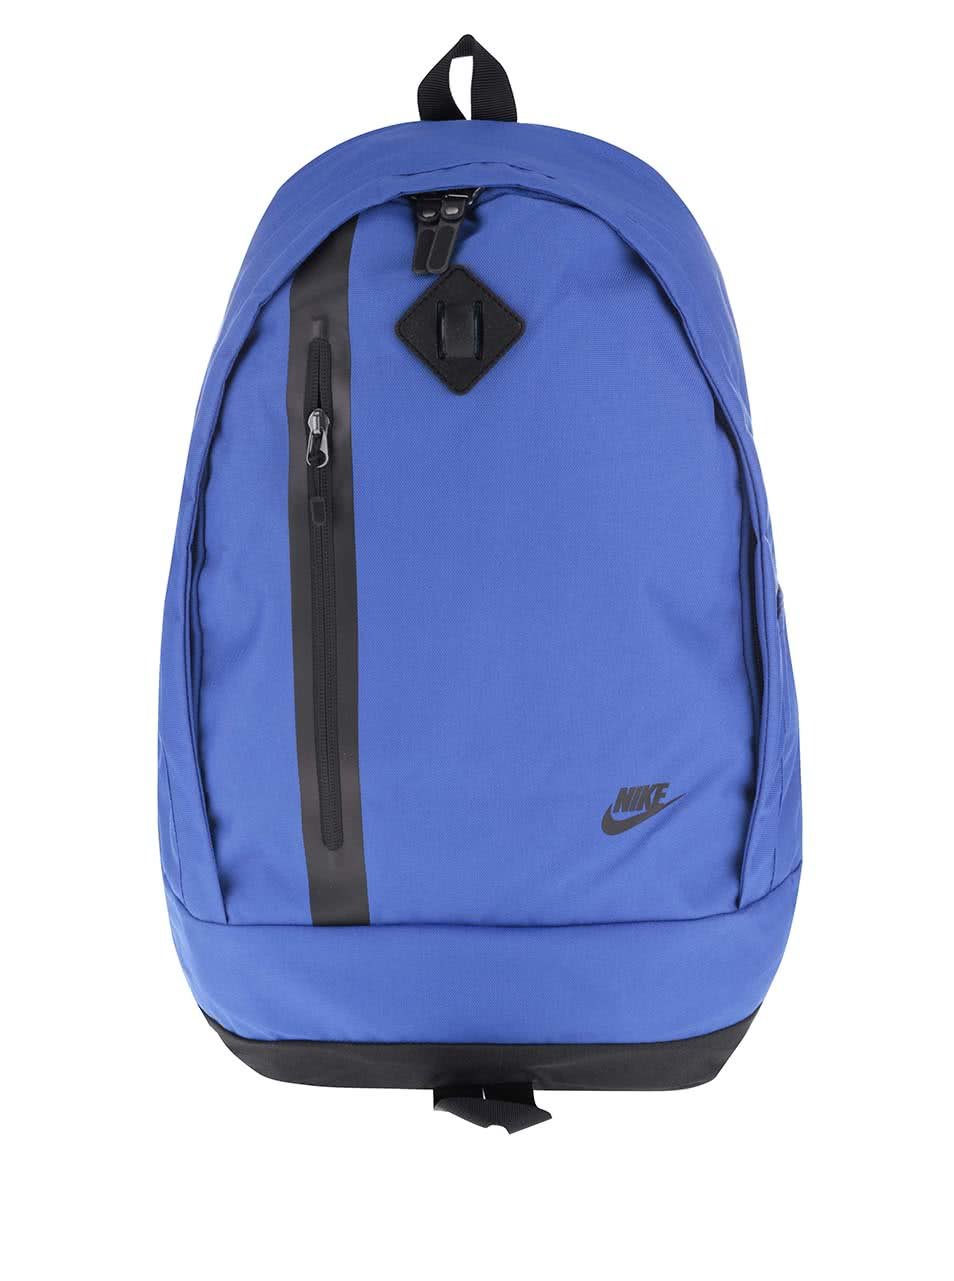 Modrý batoh Nike Cheyenne 3.0